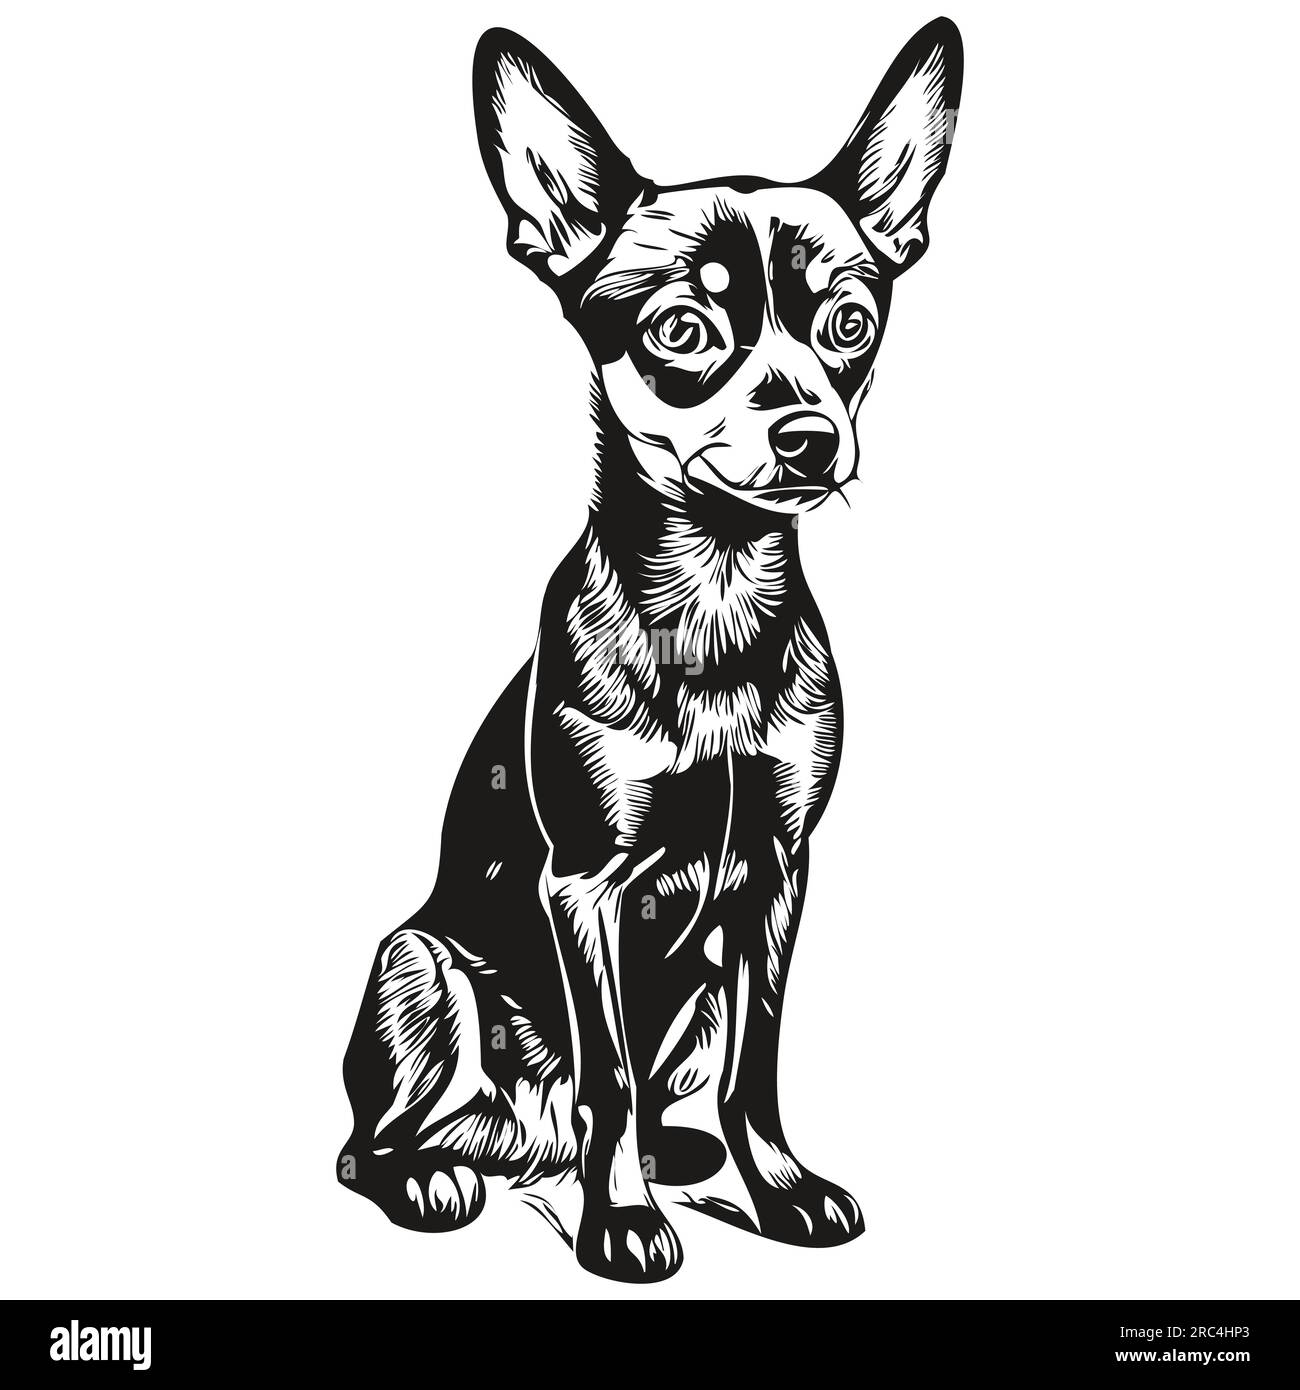 Dessin au trait miniature de race de chien Pinscher, clip art animal dessin à la main vecteur noir et blanc Illustration de Vecteur